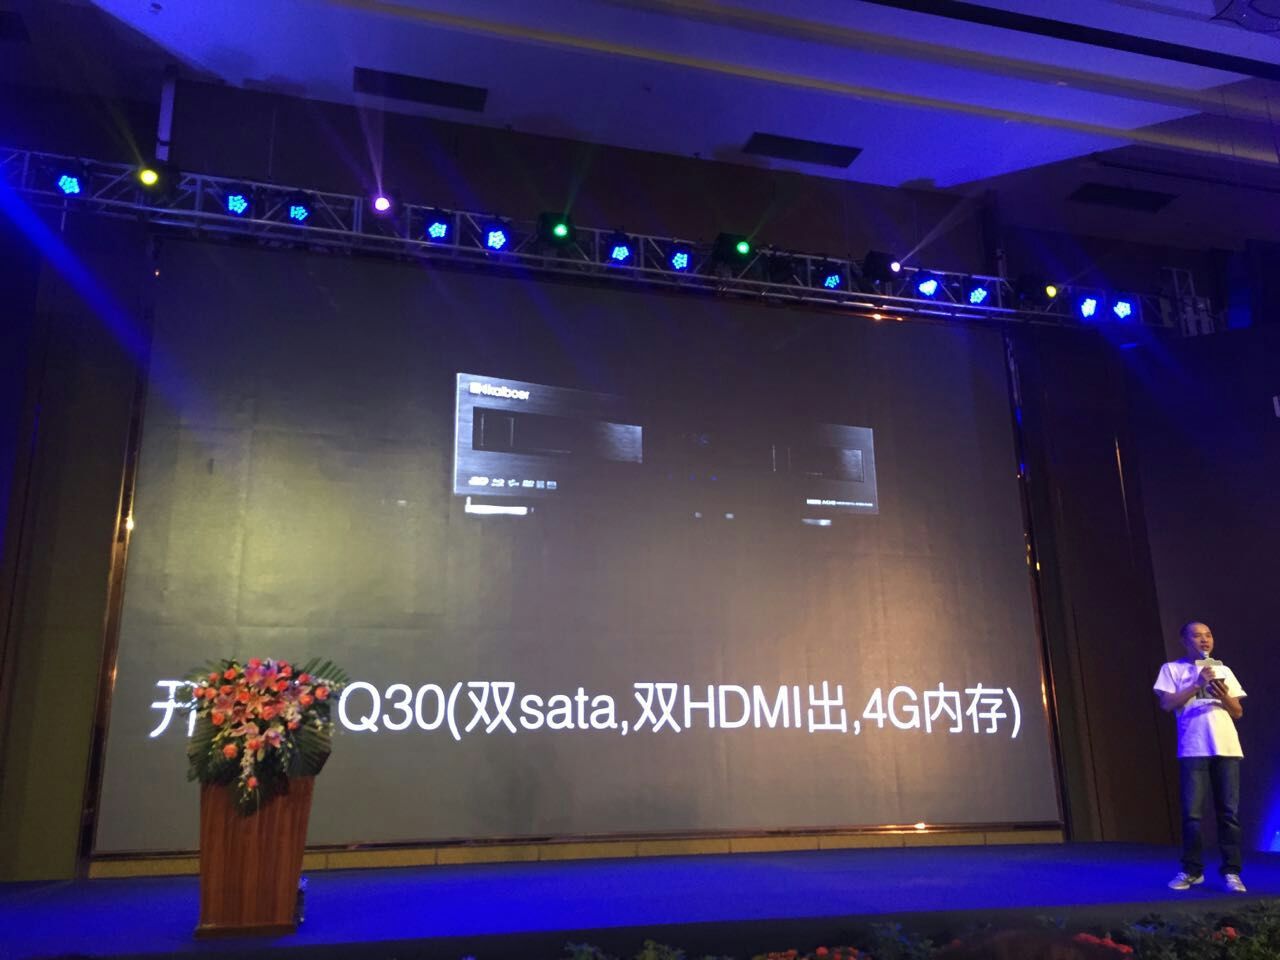 开博尔十周年大会发布Q系列三款新品 搭载10核GPU